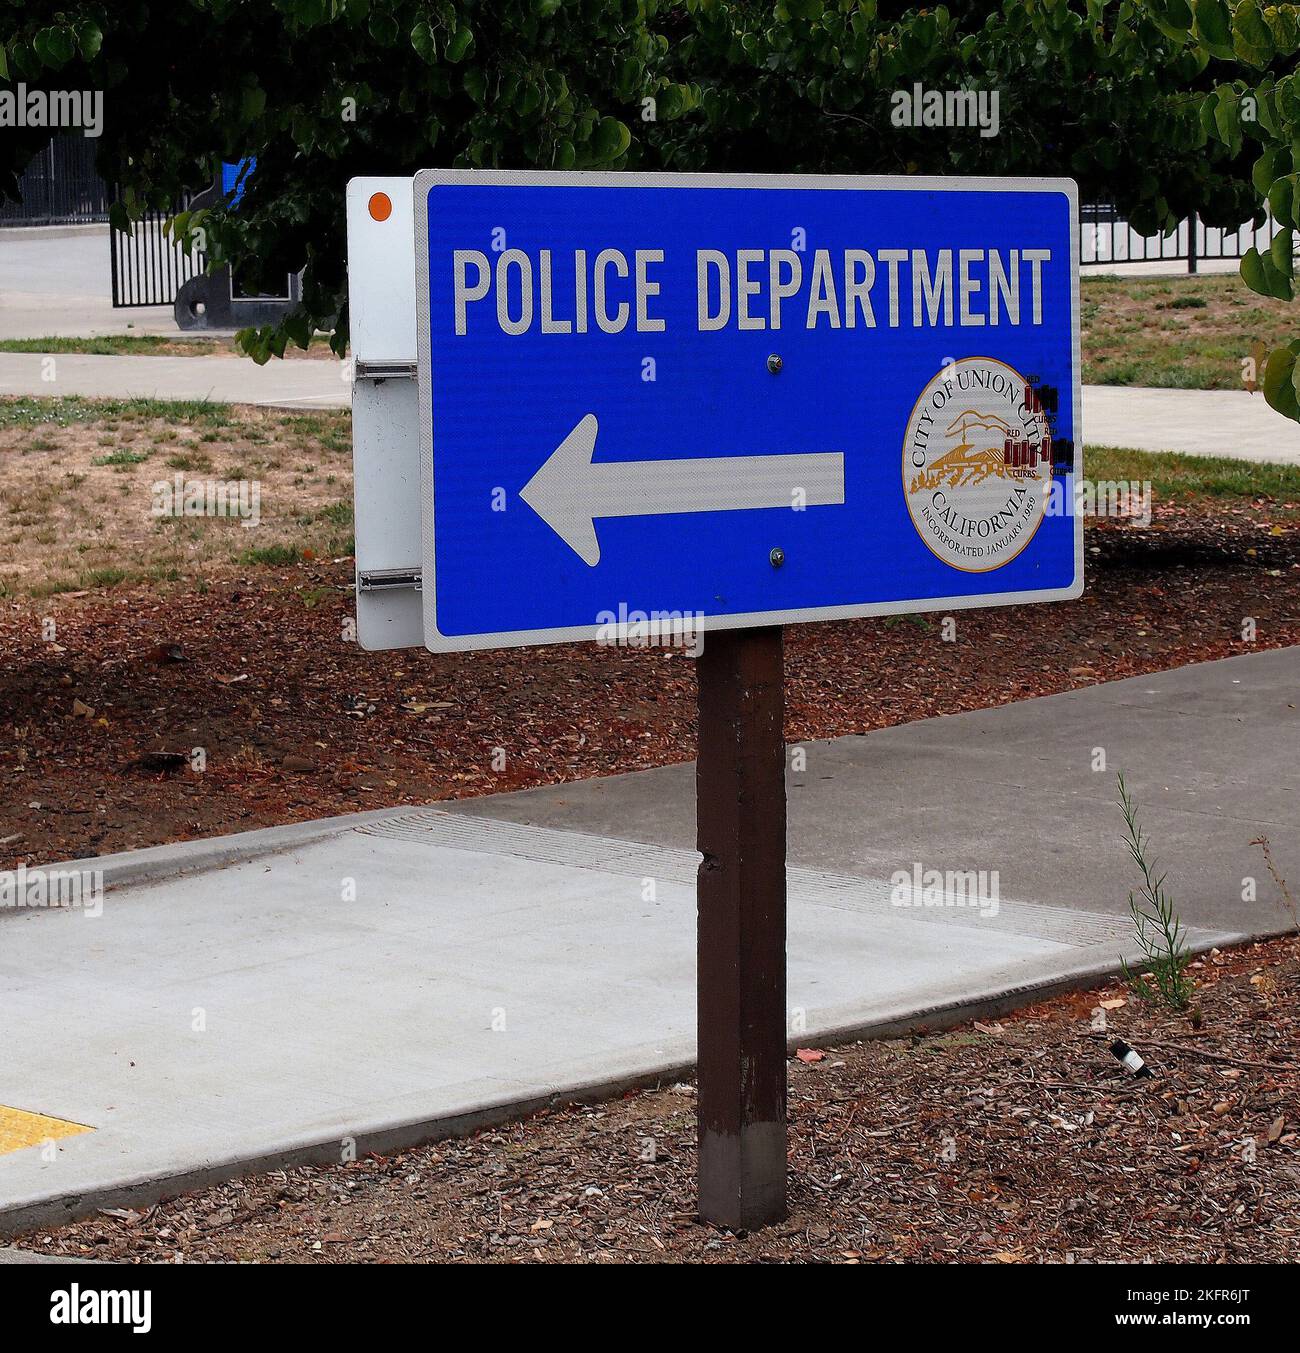 La señal de dirección del departamento de policía en Union City, California, Foto de stock